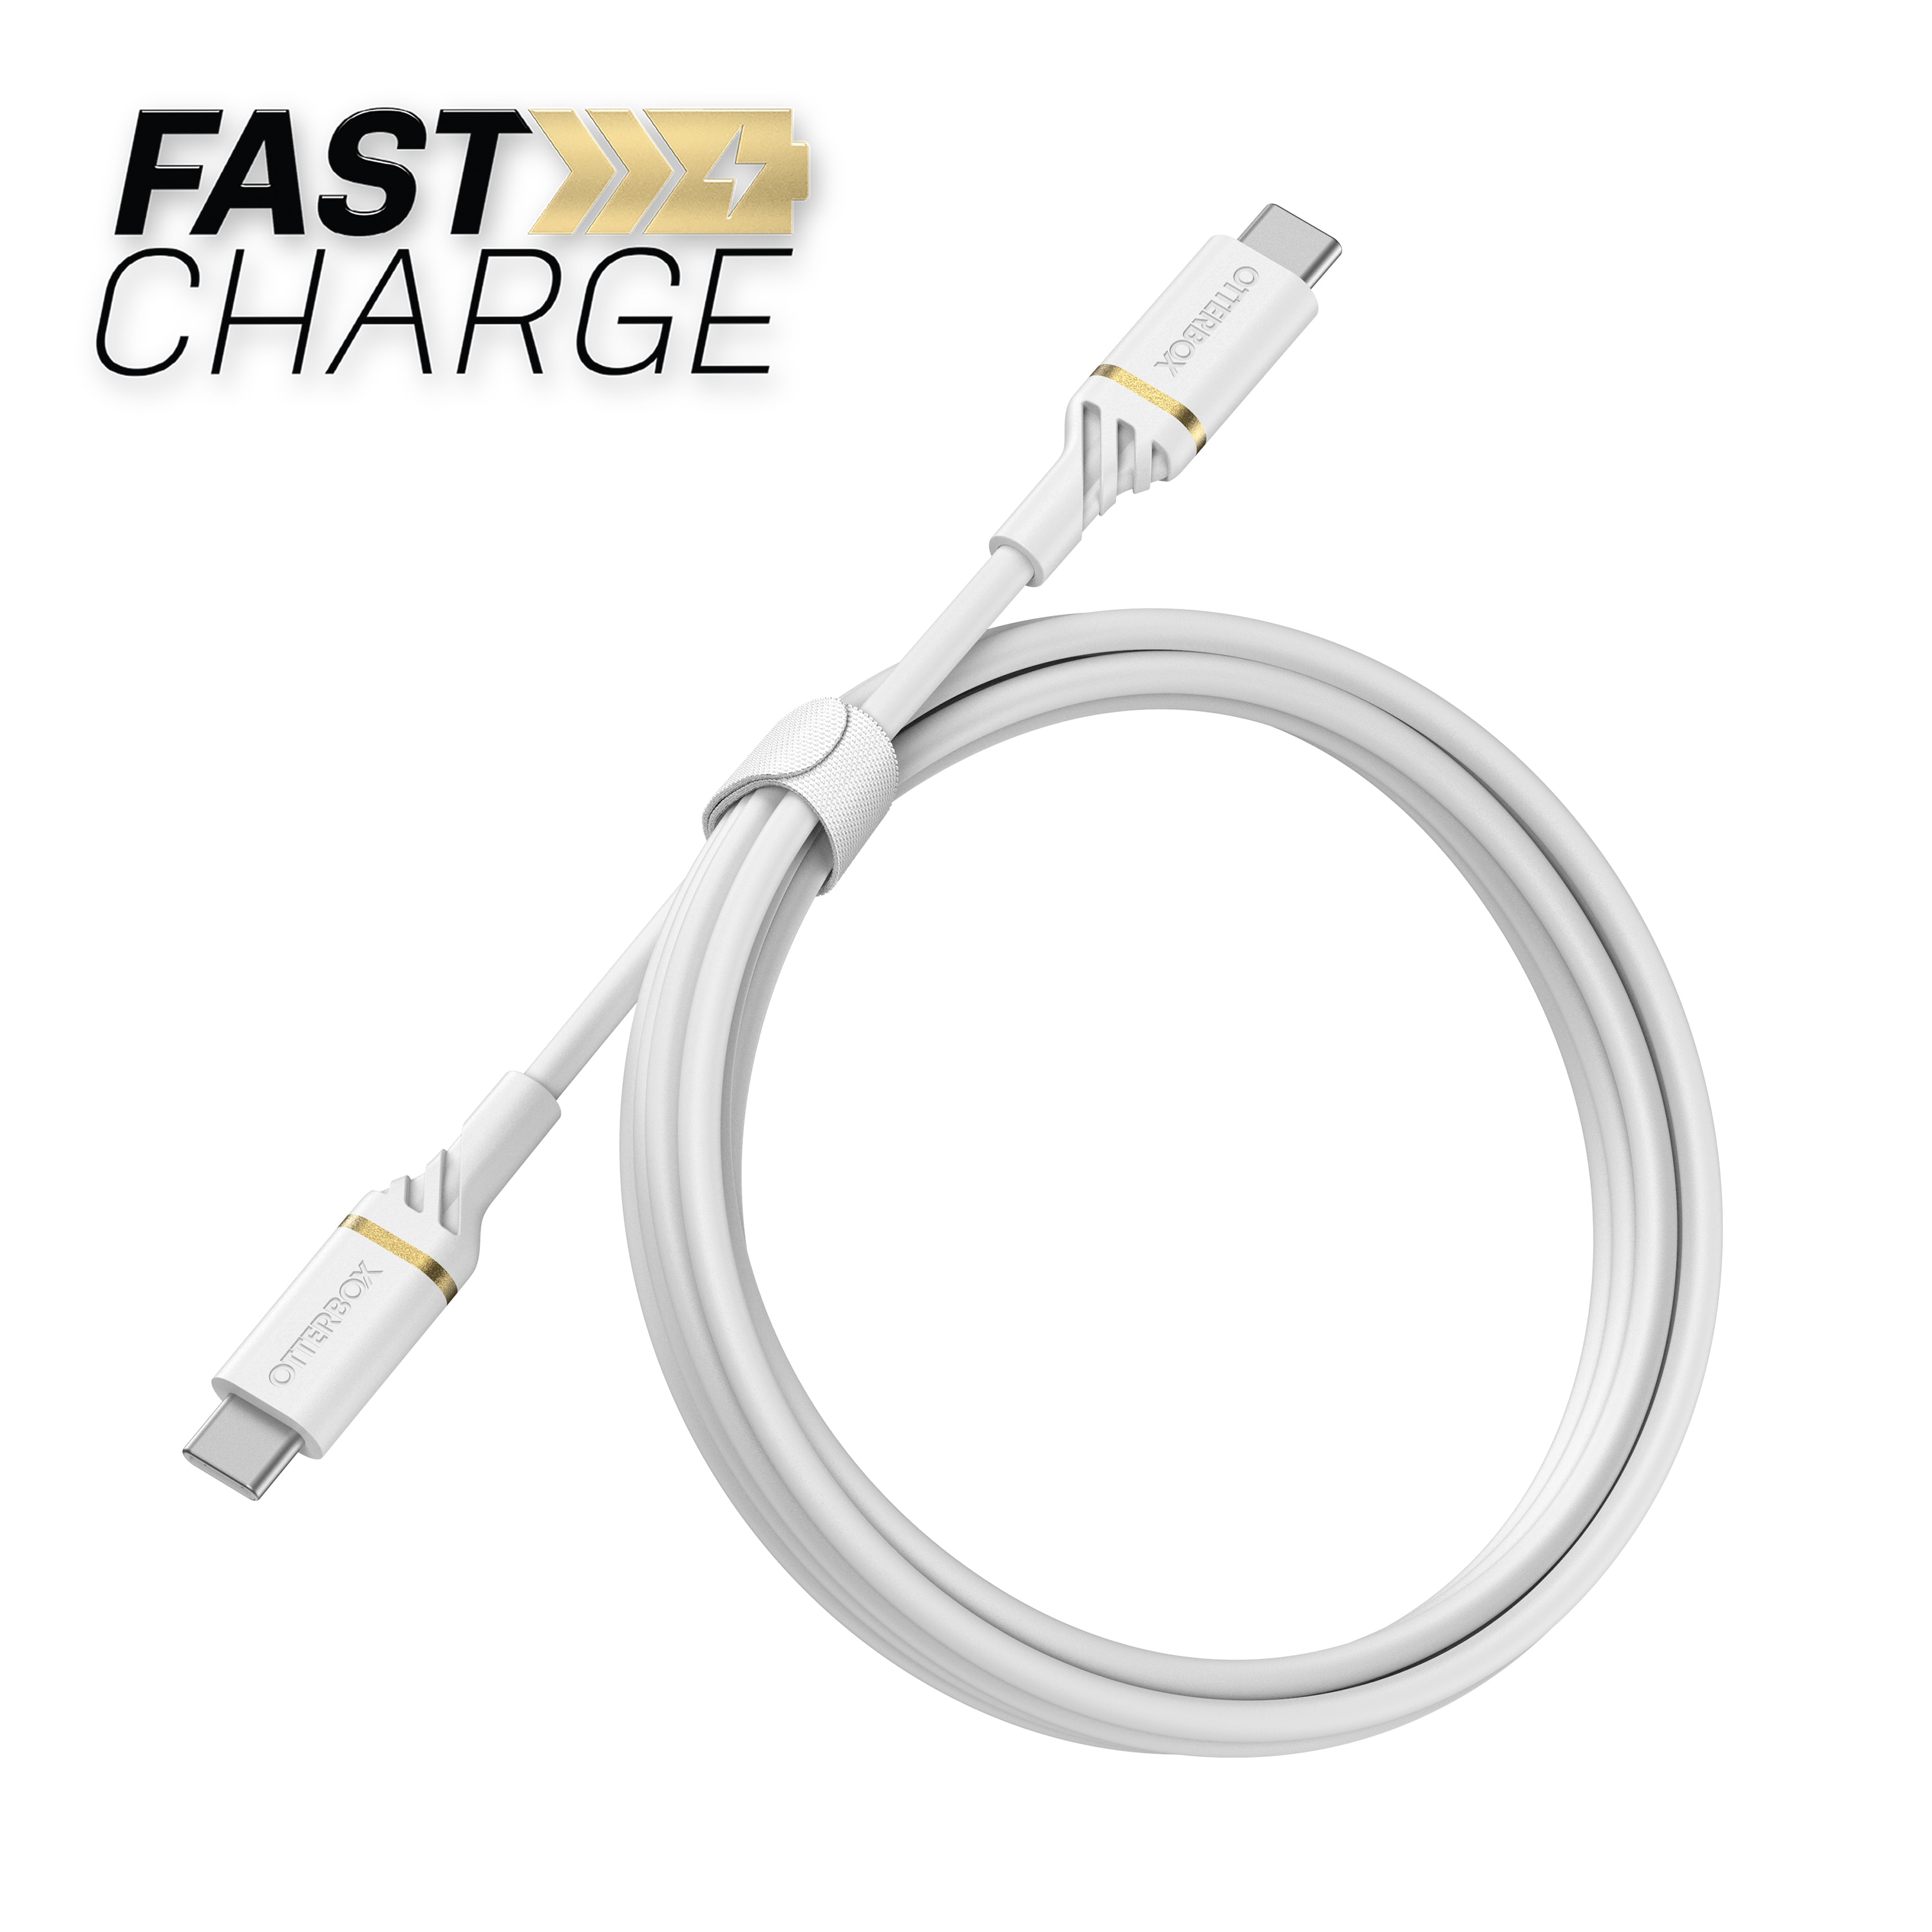 USB-C vers USB-C Câble 1 mètres Fast Charge, blanc